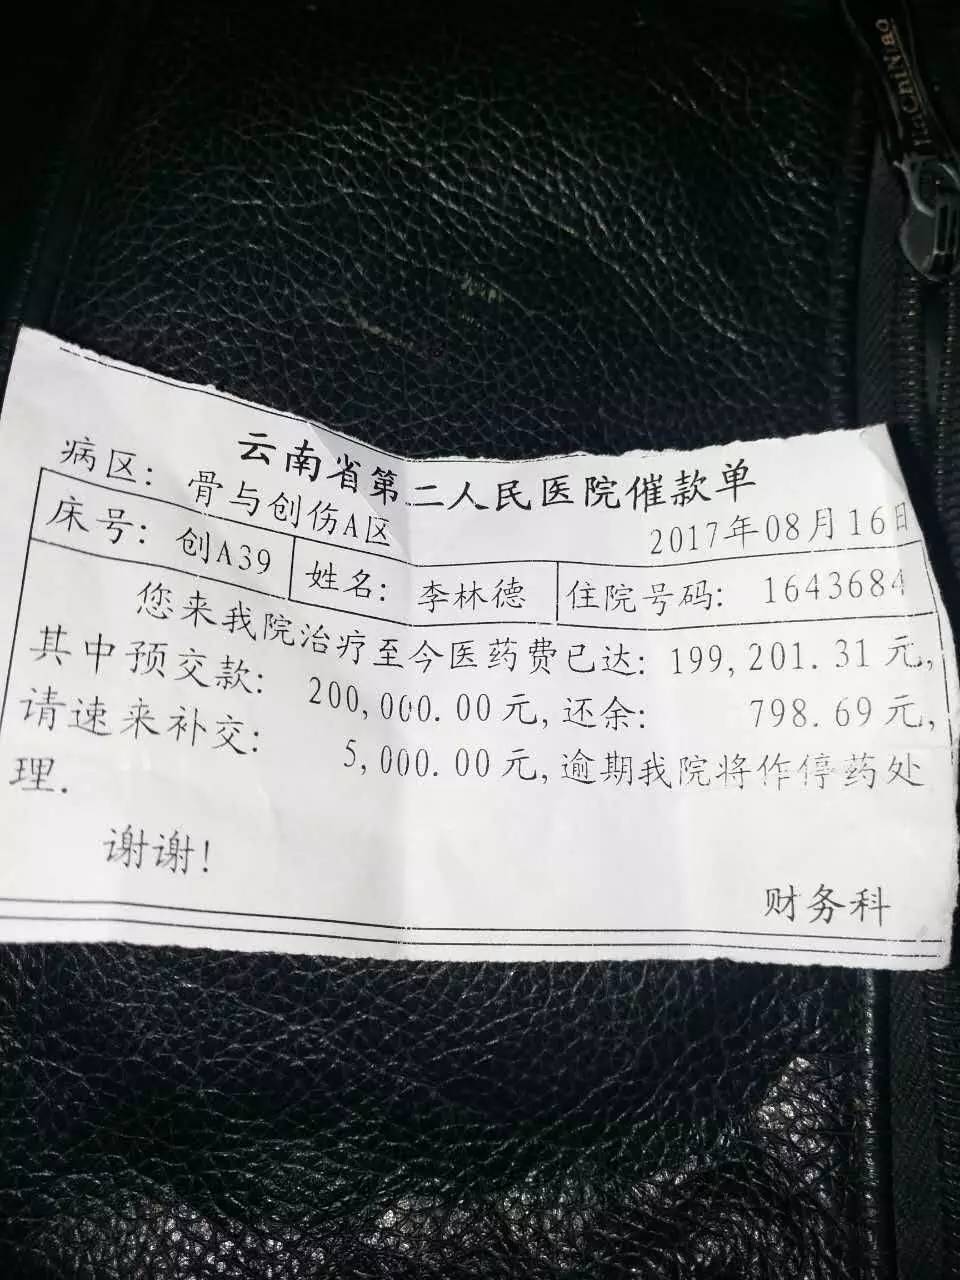 8月16日,李林德在云南省第二人民医院的治疗医药费已达20万,医院下发